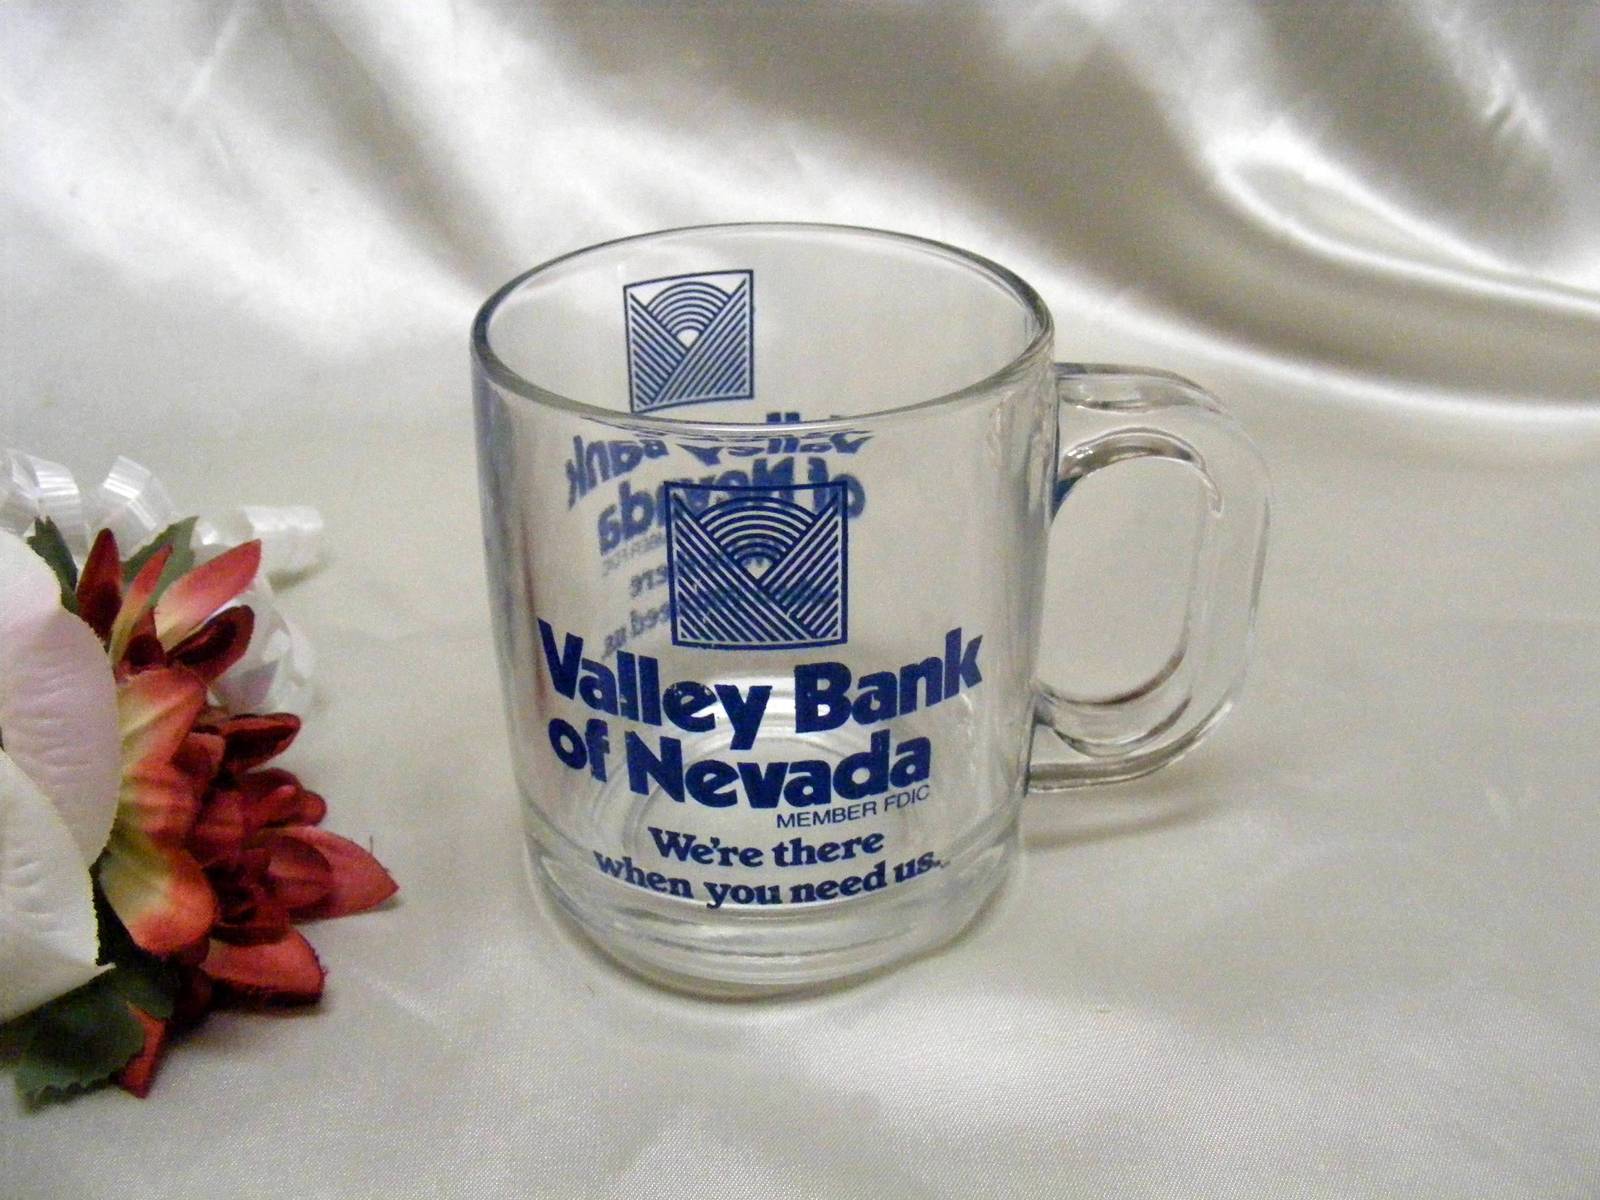 3906 Vintage Valley Bank of Nevada Glass Coffee Mug - $6.50